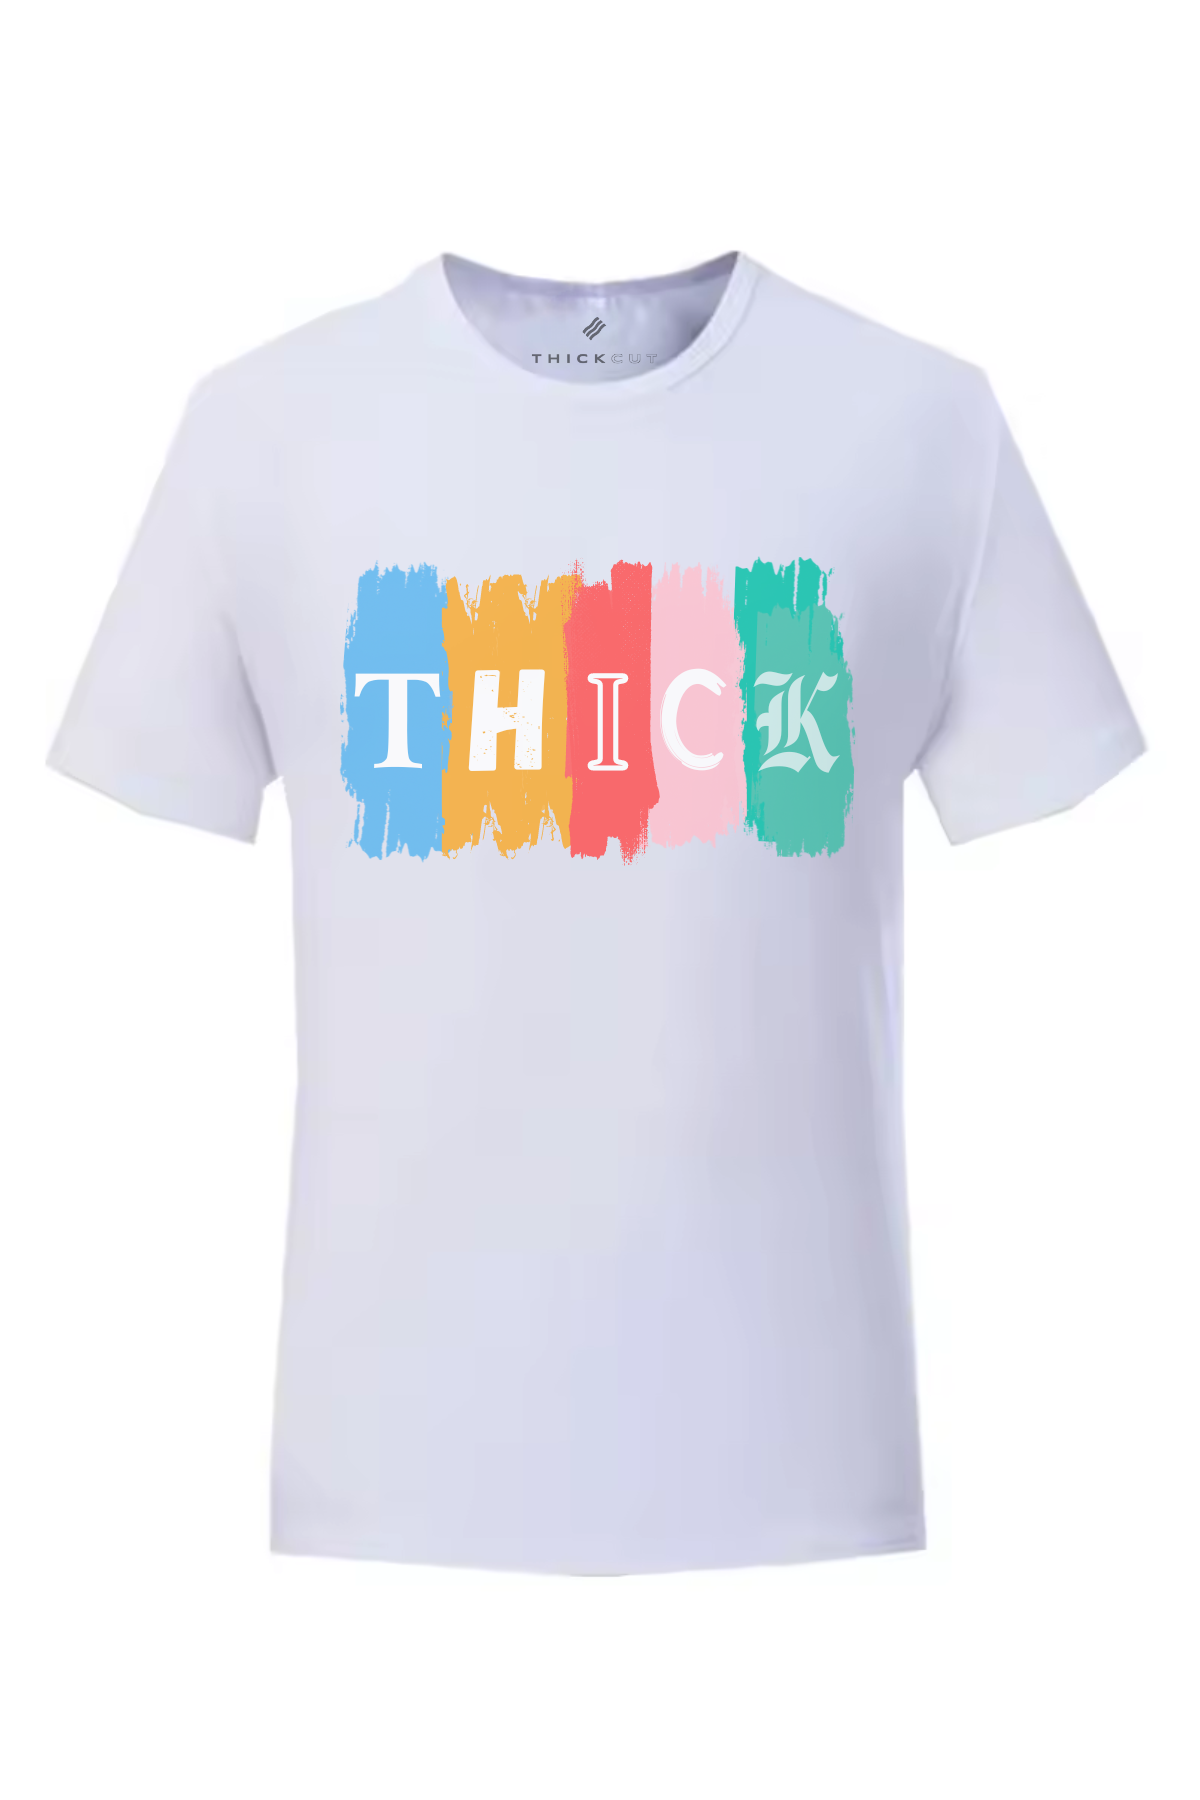 THICK Paint Unisex T-Shirt